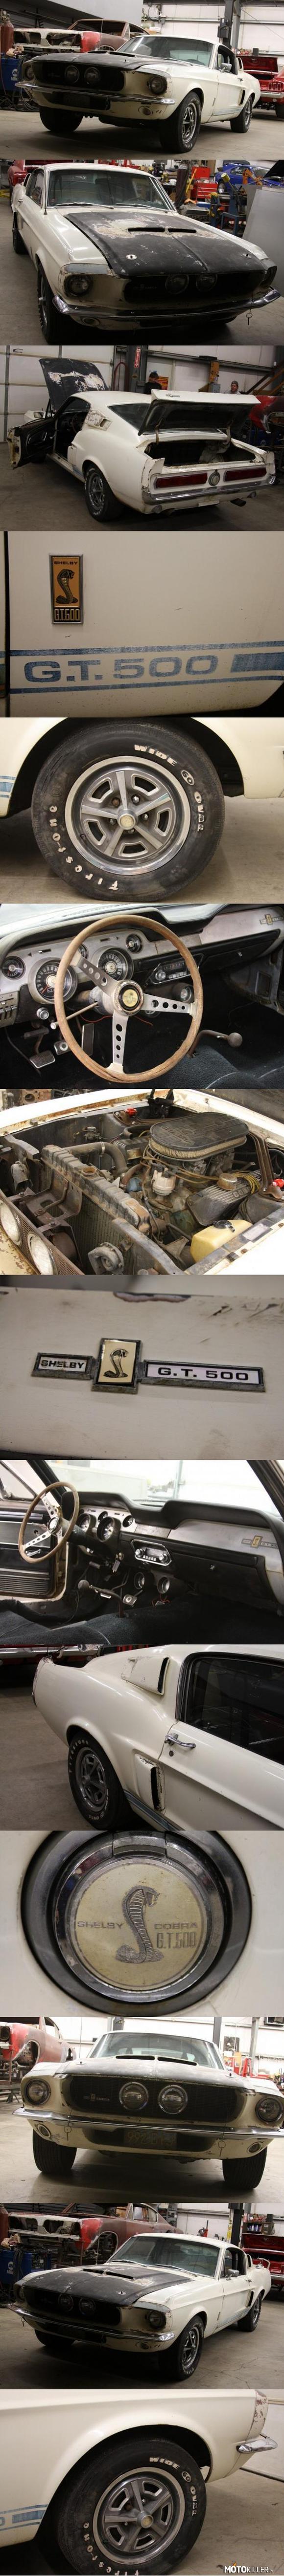 Znaleziono po latach Shelby GT500 Cobra – W poszukiwaniu nieużywanych i zapomnianych motoryzacyjnych perełek nie trzeba plądrować szop ani stodół. Powyższy Shelby Cobra GT500 jest dowodem na to, że takie auto można znaleźć nawet... na pustyni.
Oryginalny GT500 z 1967 roku został odnaleziony na pustyni w Kalifornii, gdzie stał nieużywany przez 25 lat. Wiatr i piasek wprawdzie całkowicie zniszczyły jego lakier, ale niska wilgotność zapobiegła korozji.
Egzemplarz ten został sprawdzony pod względem oryginalności i zostało dowiedzione, że jest to autentyczny Shelby GT500. Silnik to siedmiolitrowa jednostka typu big block, nominalnie wytwarzająca ok. 410 KM. Motor jednak najprawdopodobniej został poddany modyfikacjom przez poprzednich właścicieli.

Co ciekawe, obecny właściciel nie ma w planach doprowadzenia nadwozia do stanu idealnego, a jedyne, co zostanie poddane renowacji, to silnik i pozostałe układy mechaniczne i elektryczne. 